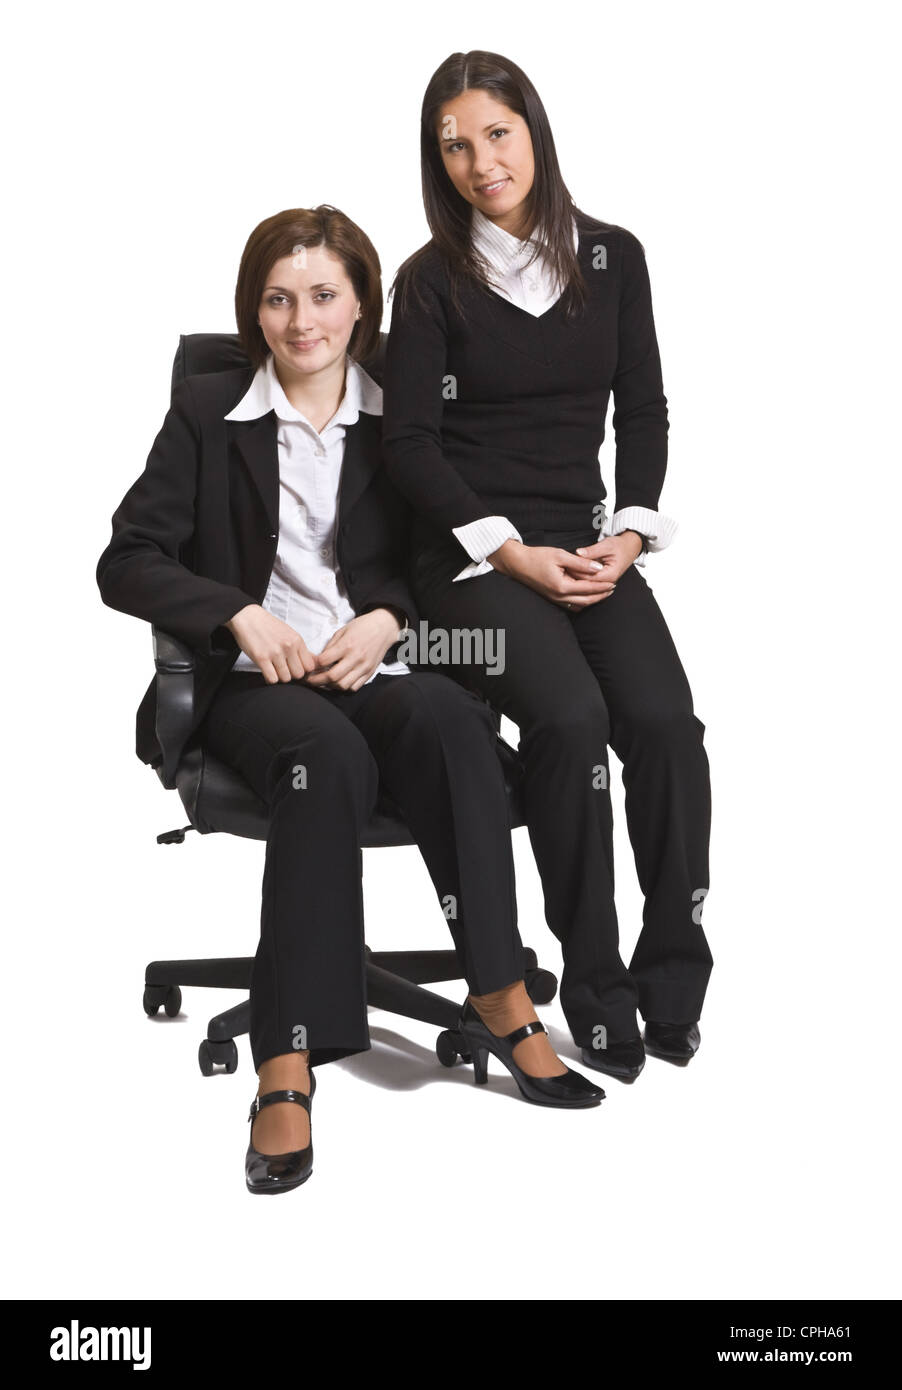 Zwei junge Unternehmerinnen Kollegen sitzen auf einem Stuhl vor einem weißen Hintergrund. Stockfoto